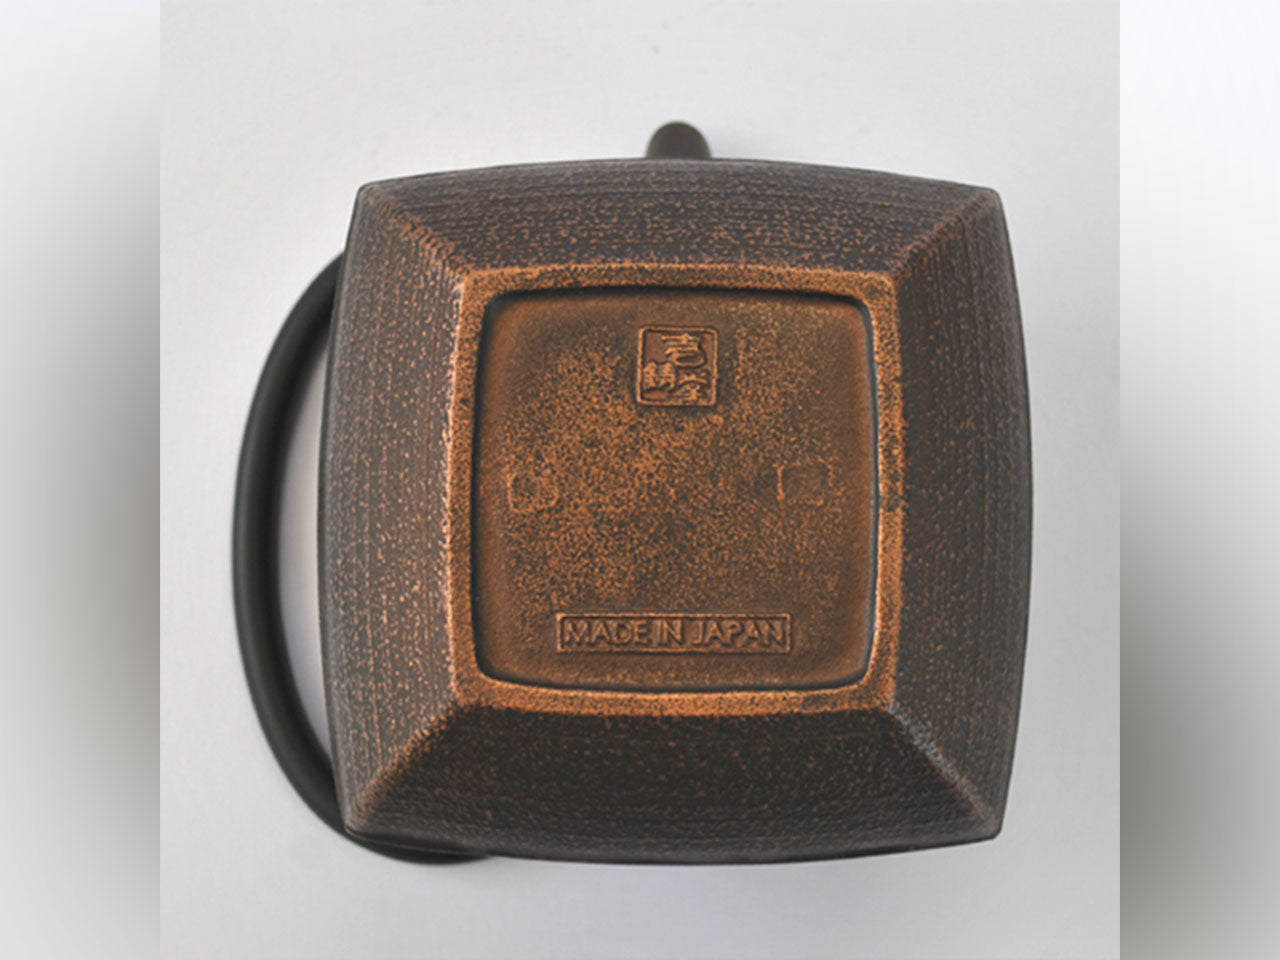 茶具 茶壶 石庭 0.8L 铜黑 南部铁器 金属工艺品